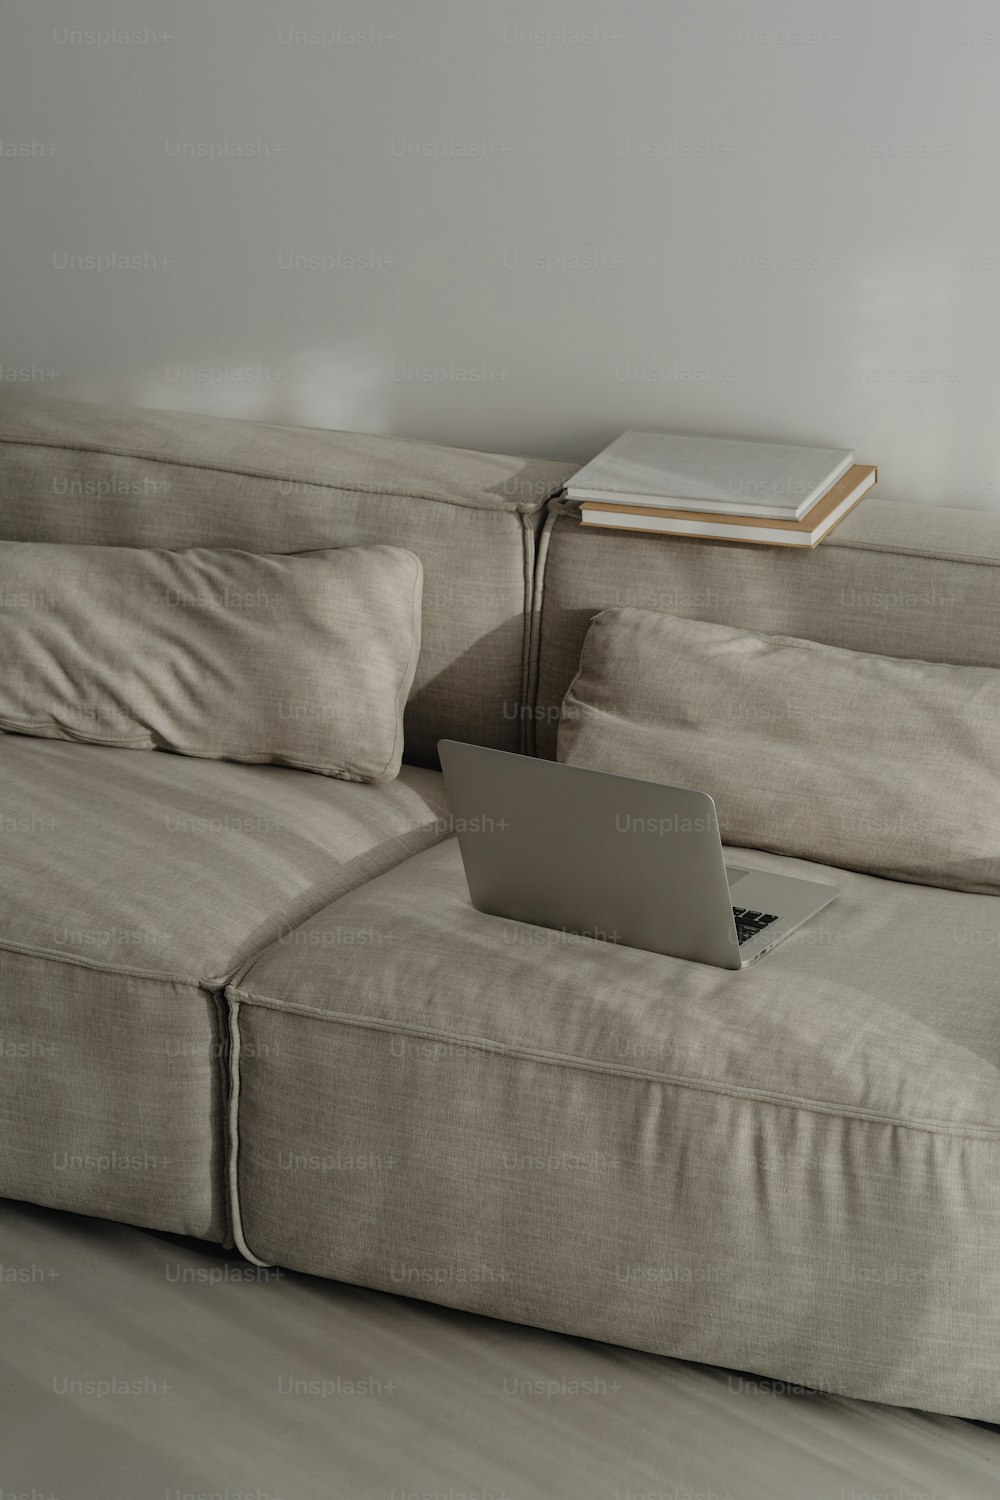 um computador portátil sentado em cima de um sofá